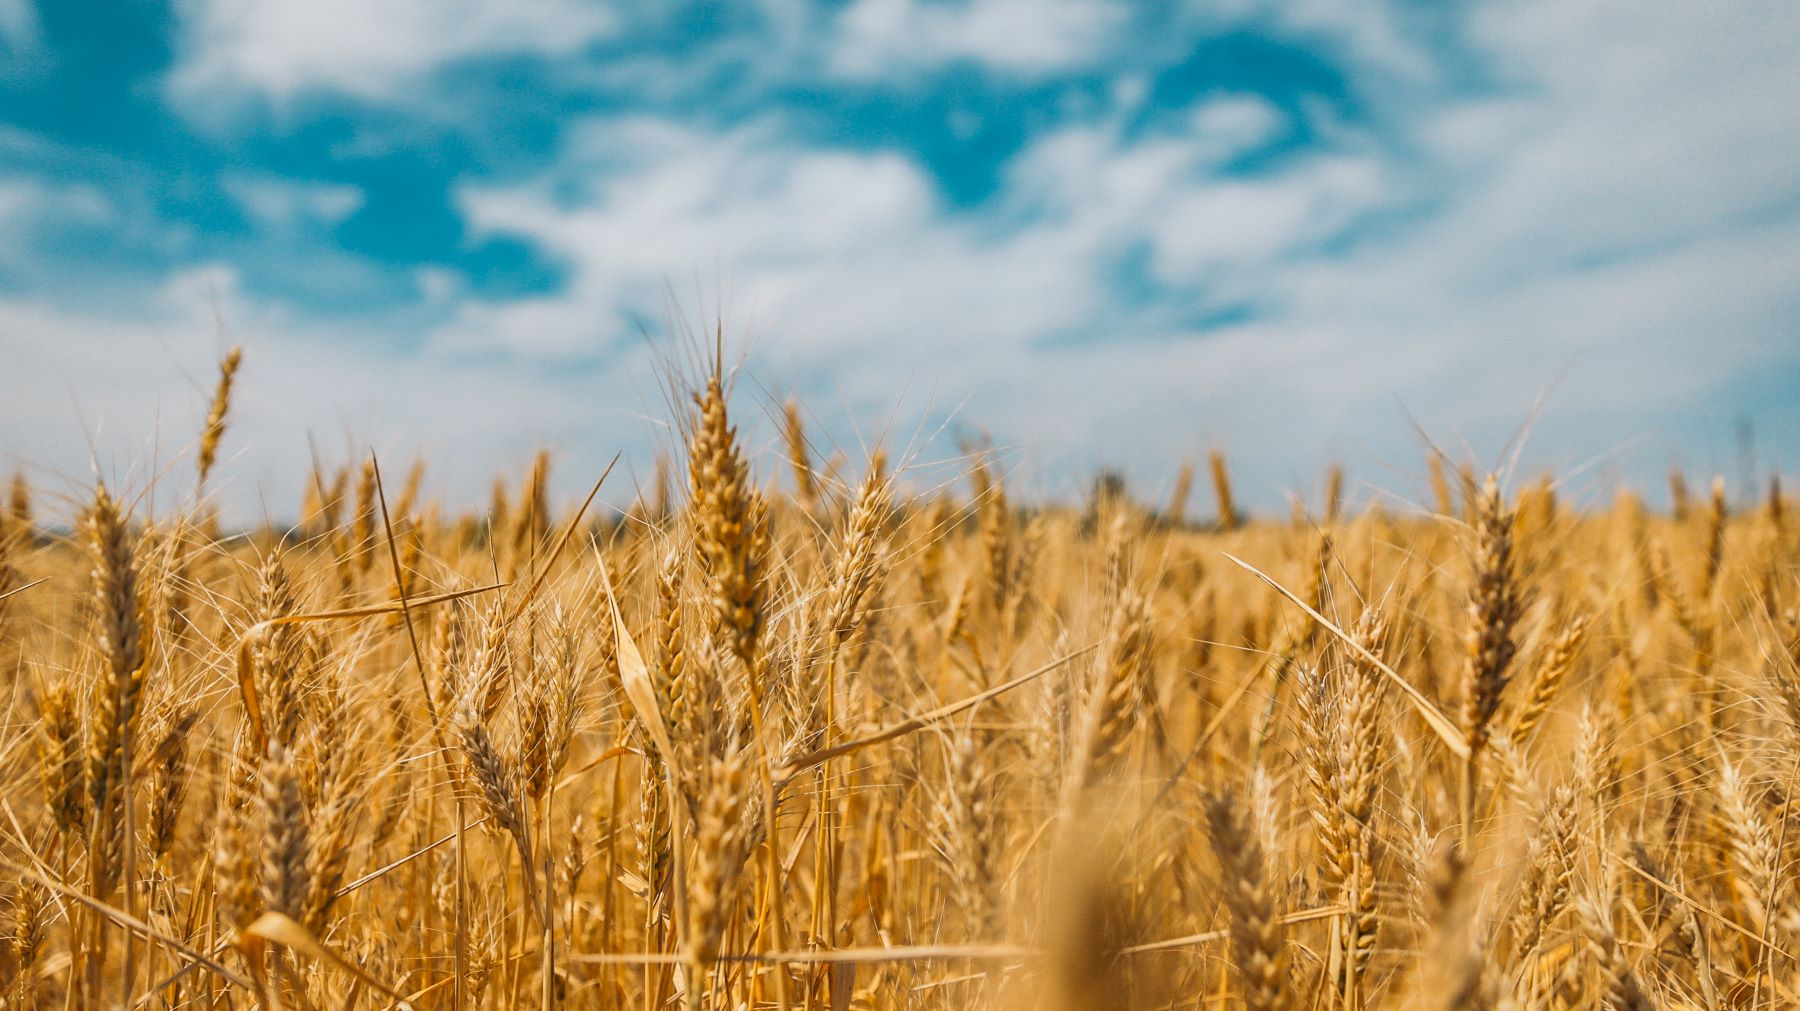 Raskó György: Elkésett a kormány, már nem segít a gazdákon az ukrán gabona kitiltása